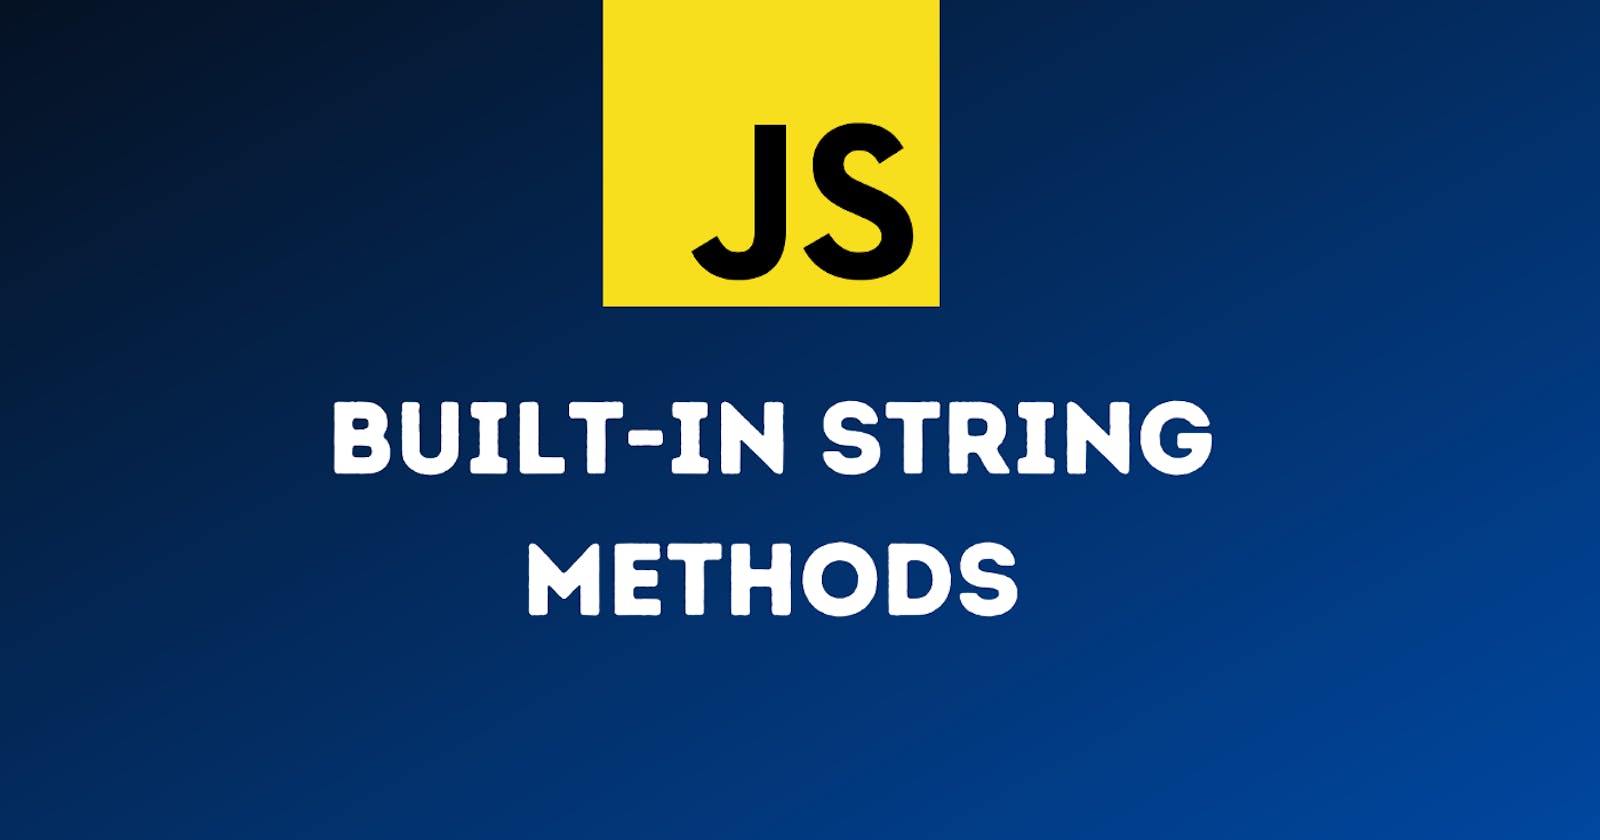 String methods in javascript